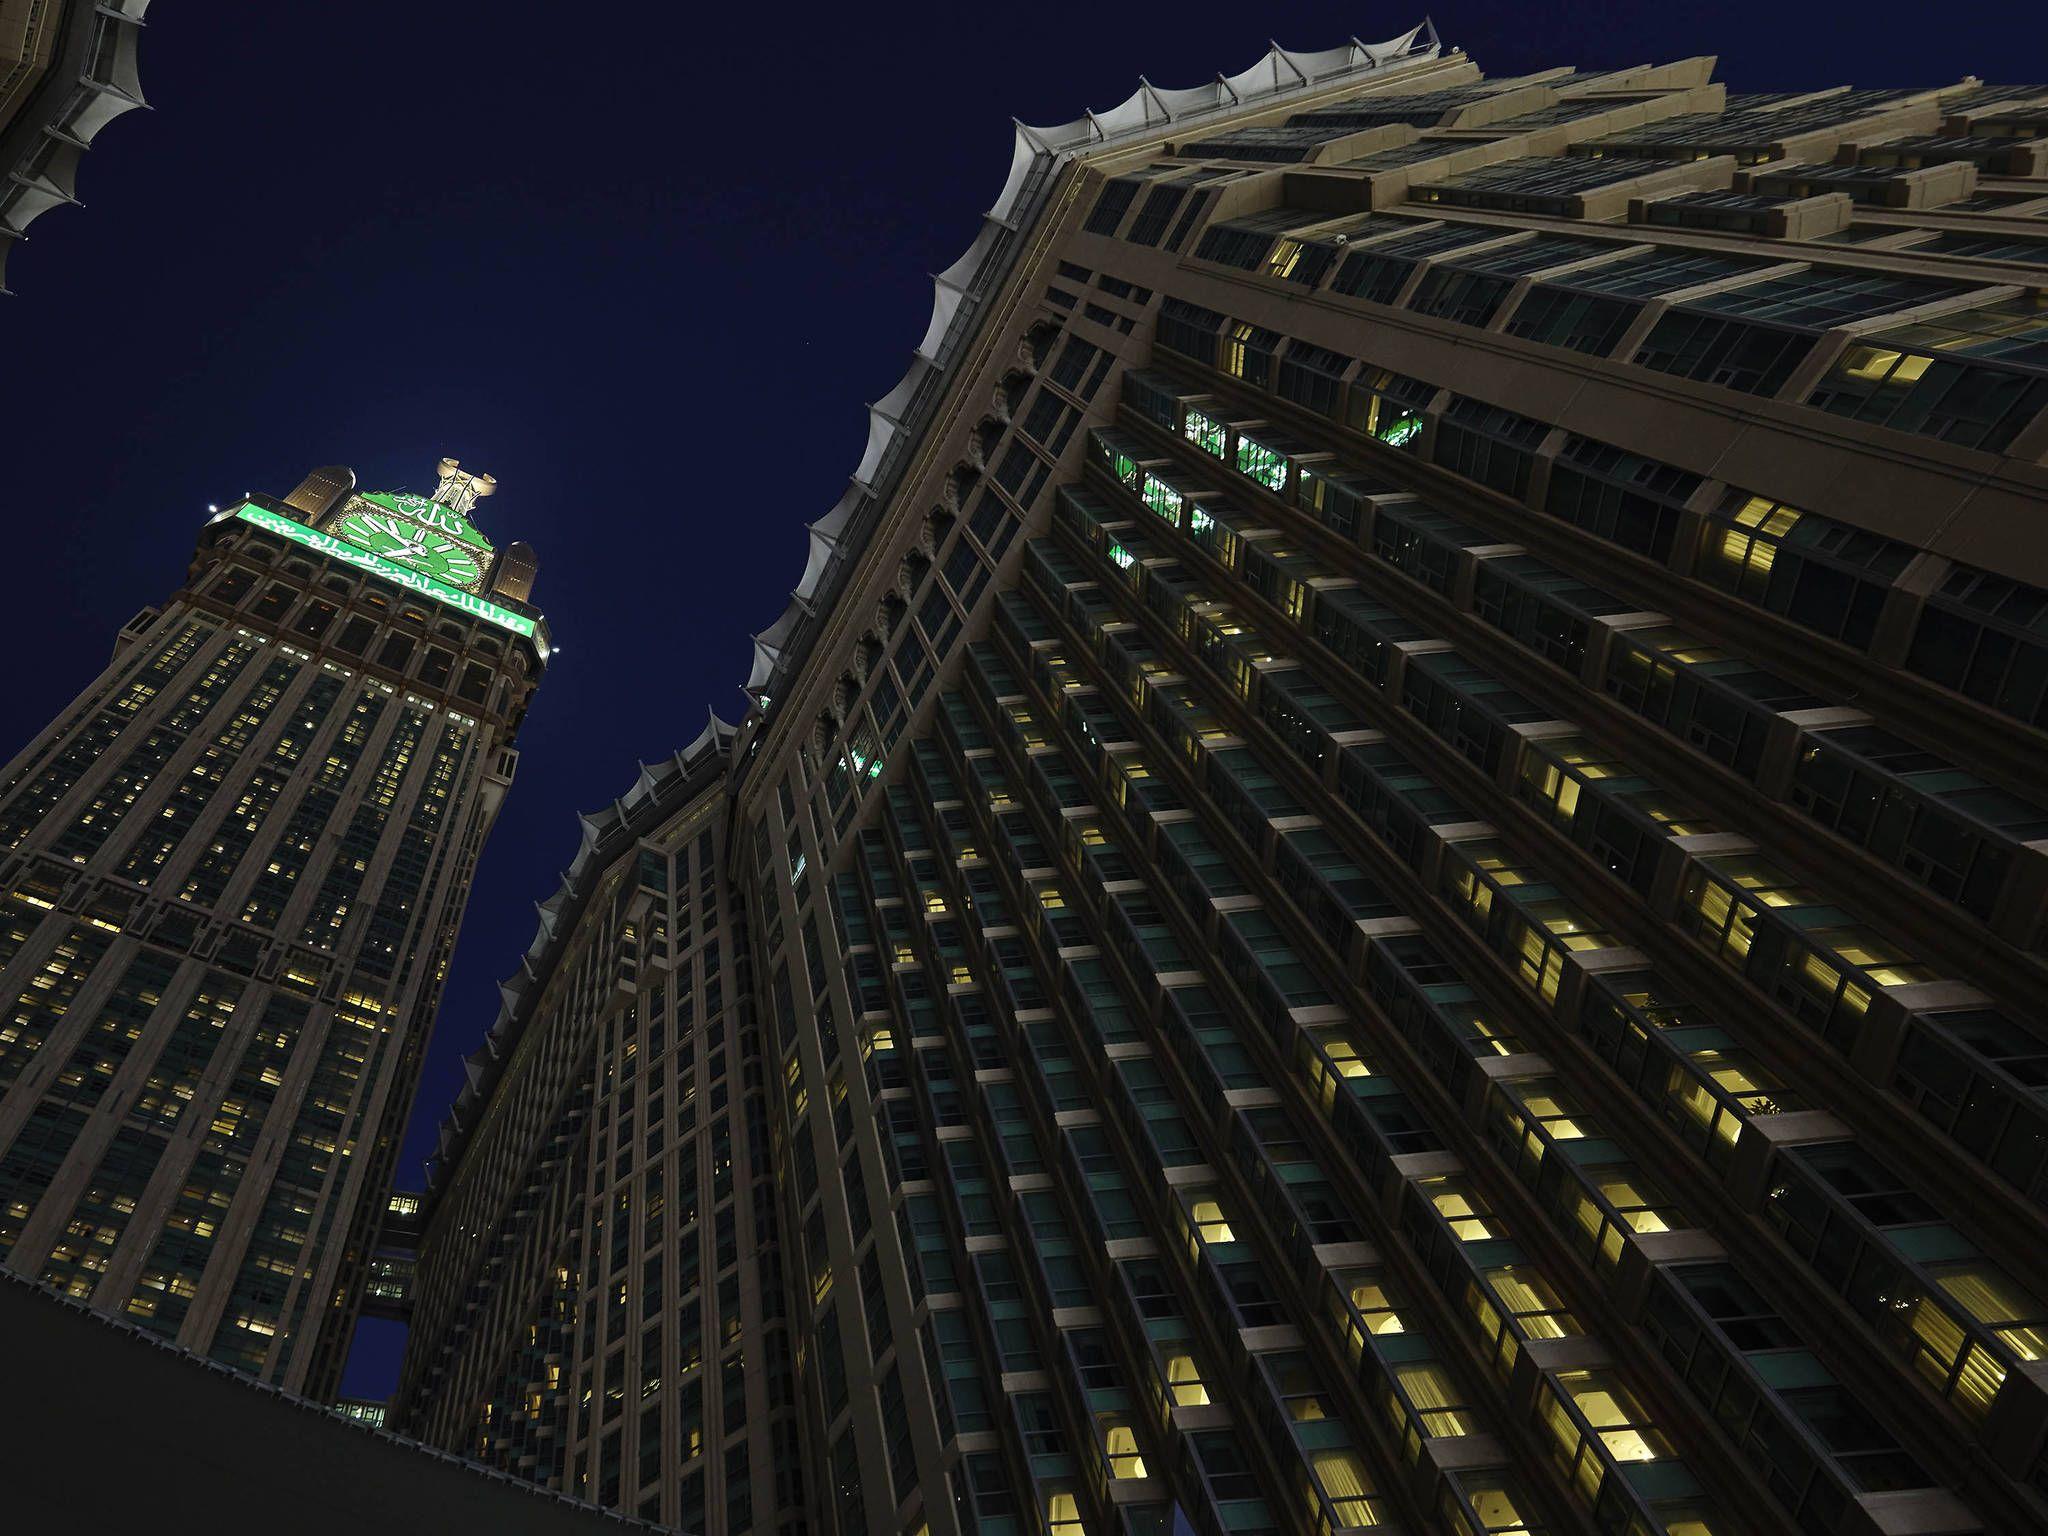 Hotel in MAKKAH Zamzam Makkah near holy Kaaba